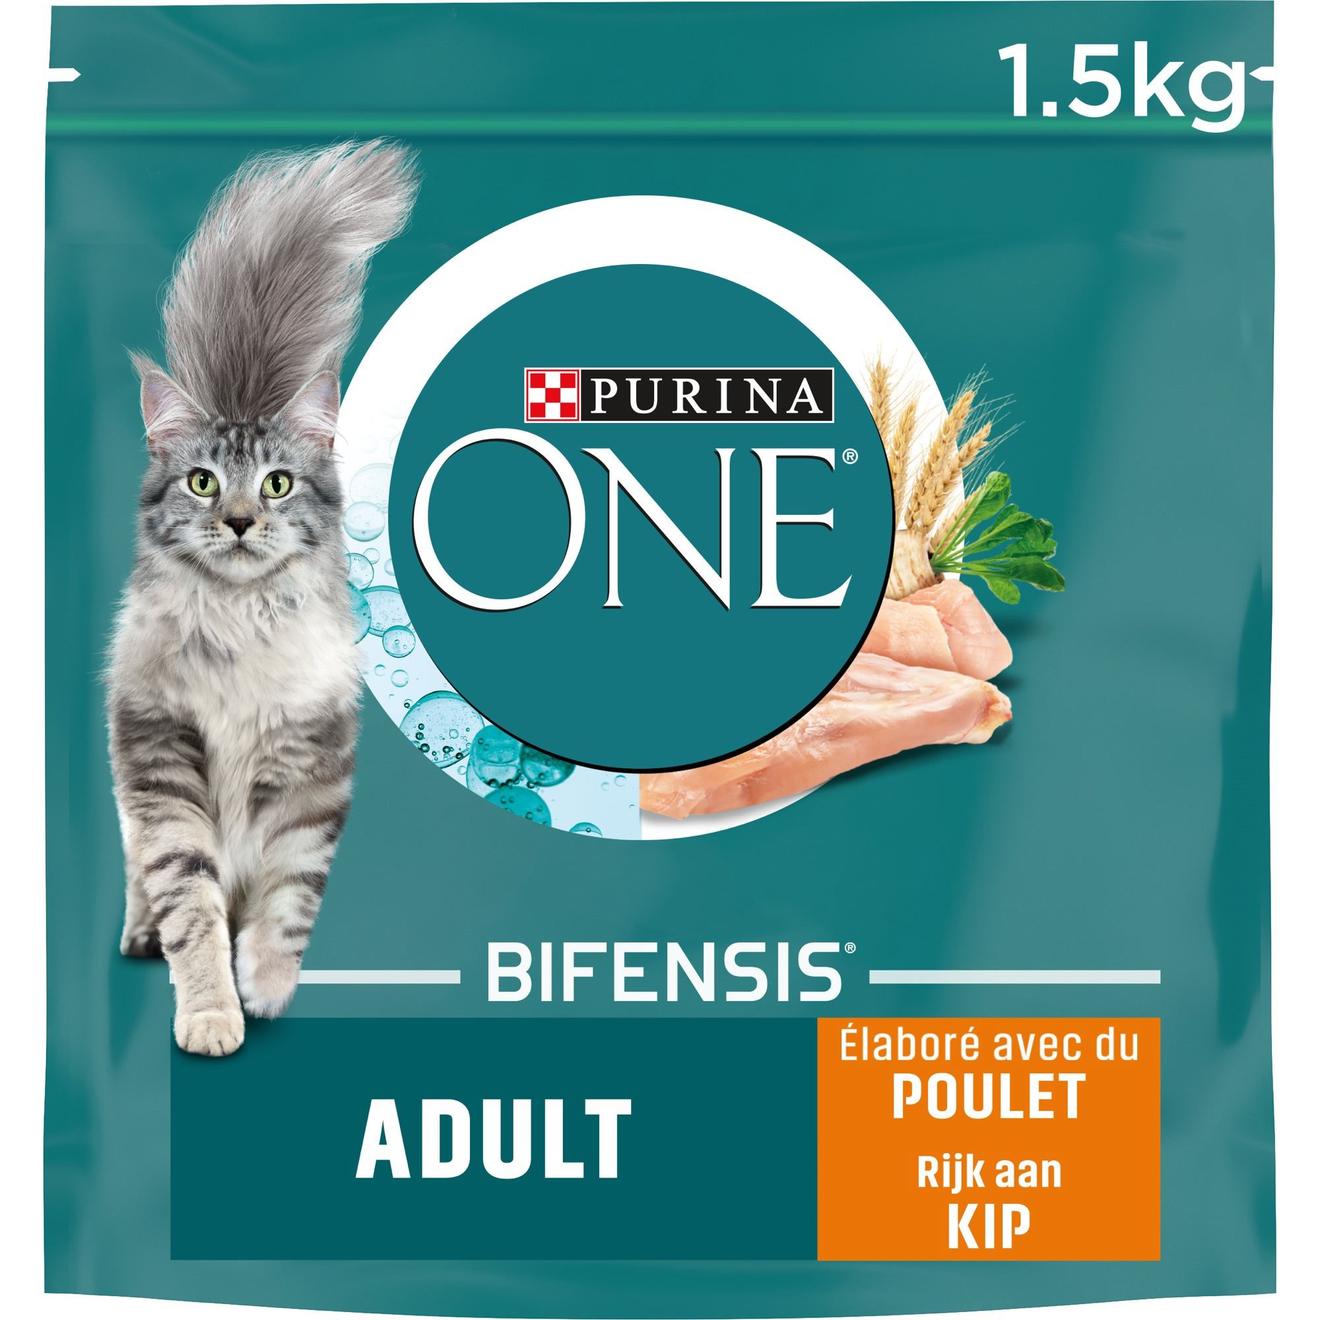 Purina one bifensis® adult poulet et céréales complètes  1,5kg offre à 12,59€ sur Tom & Co